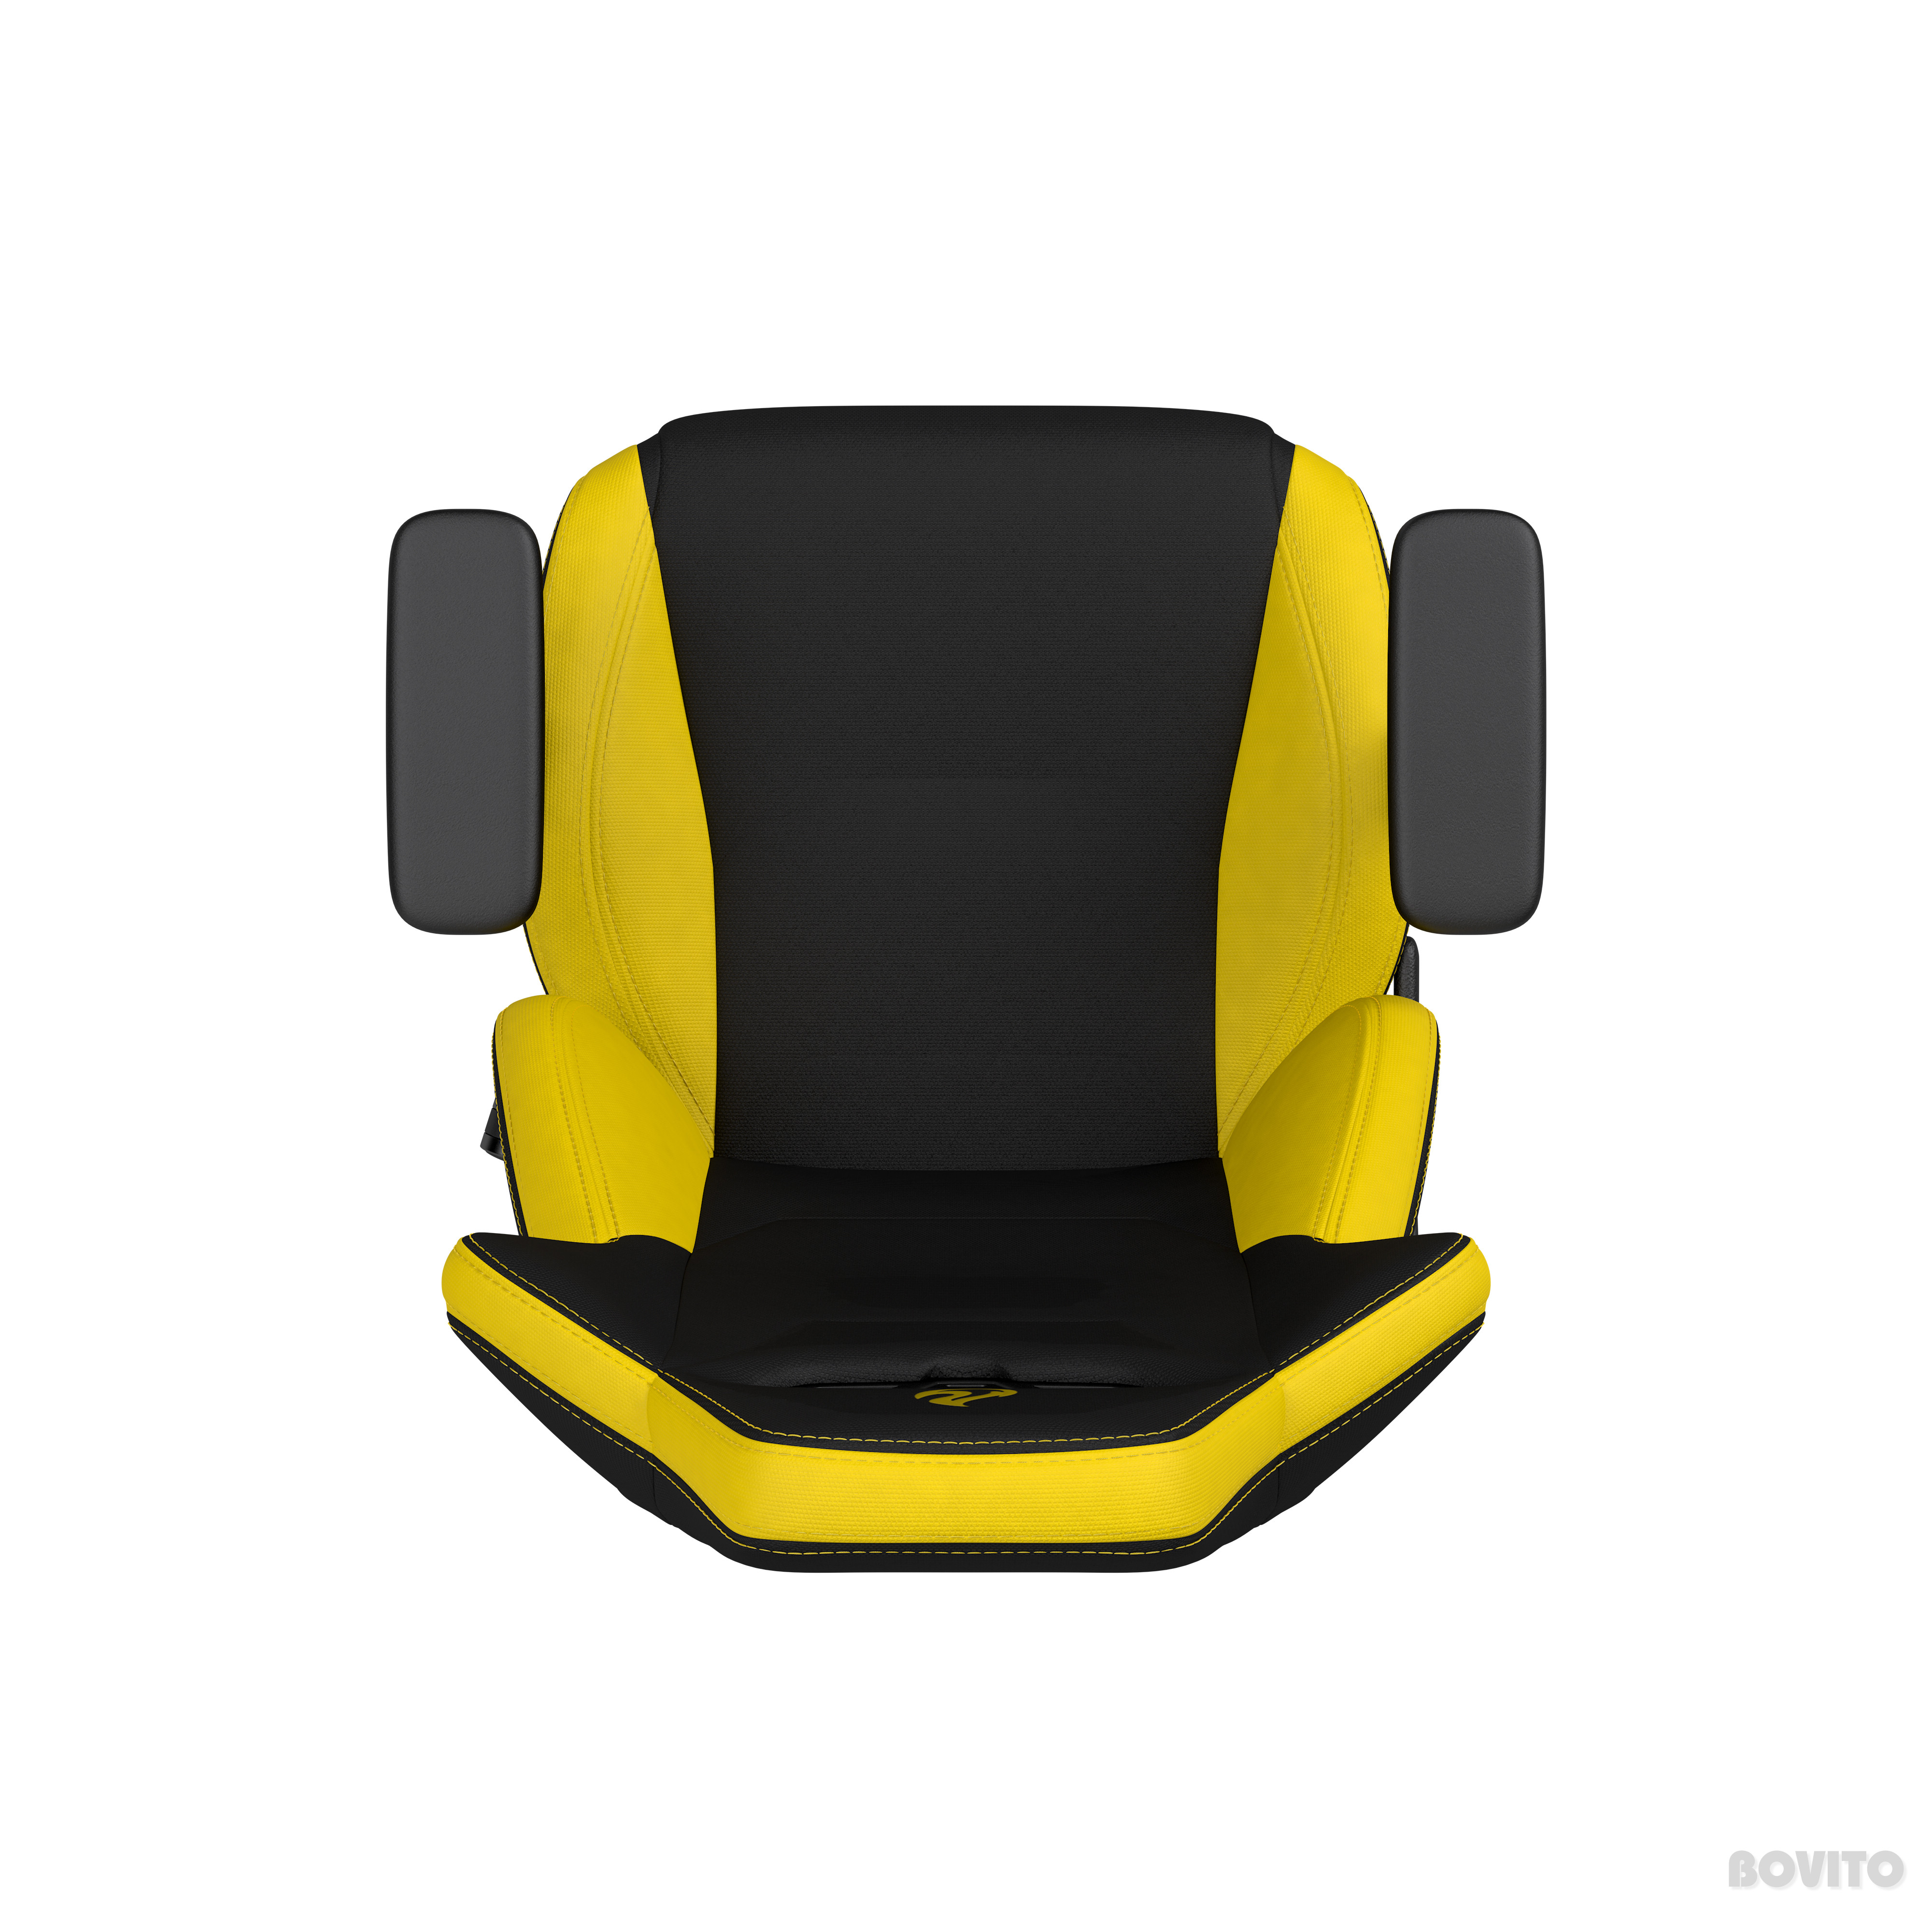 Nitro Concepts S300 Gaming szék (feketesárga) Árlista